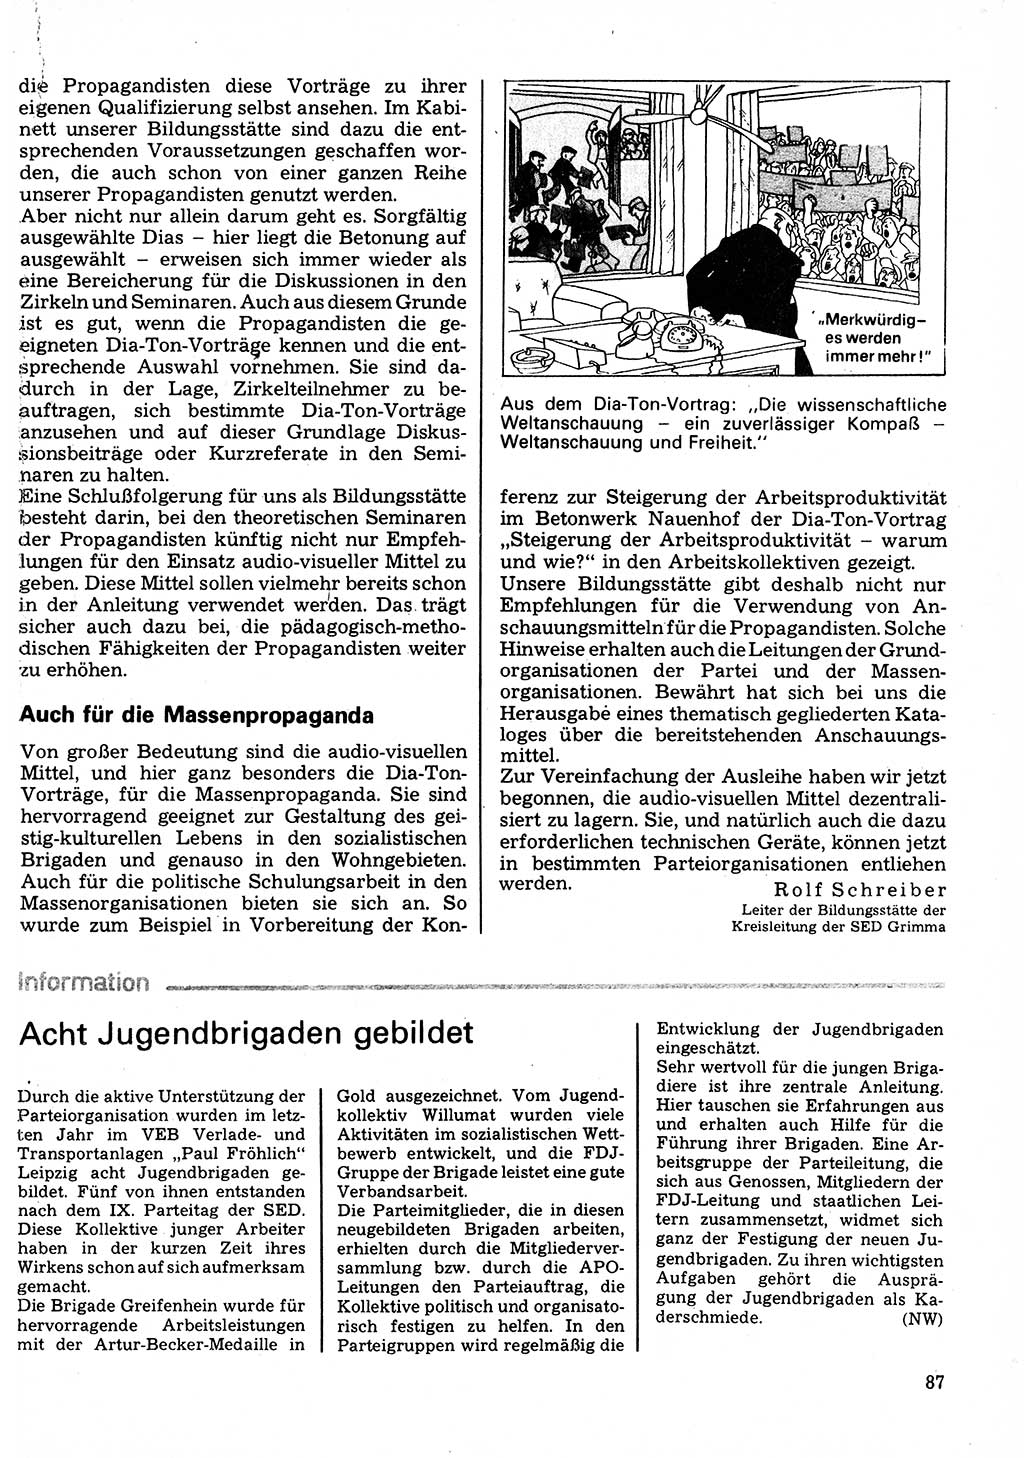 Neuer Weg (NW), Organ des Zentralkomitees (ZK) der SED (Sozialistische Einheitspartei Deutschlands) für Fragen des Parteilebens, 32. Jahrgang [Deutsche Demokratische Republik (DDR)] 1977, Seite 87 (NW ZK SED DDR 1977, S. 87)